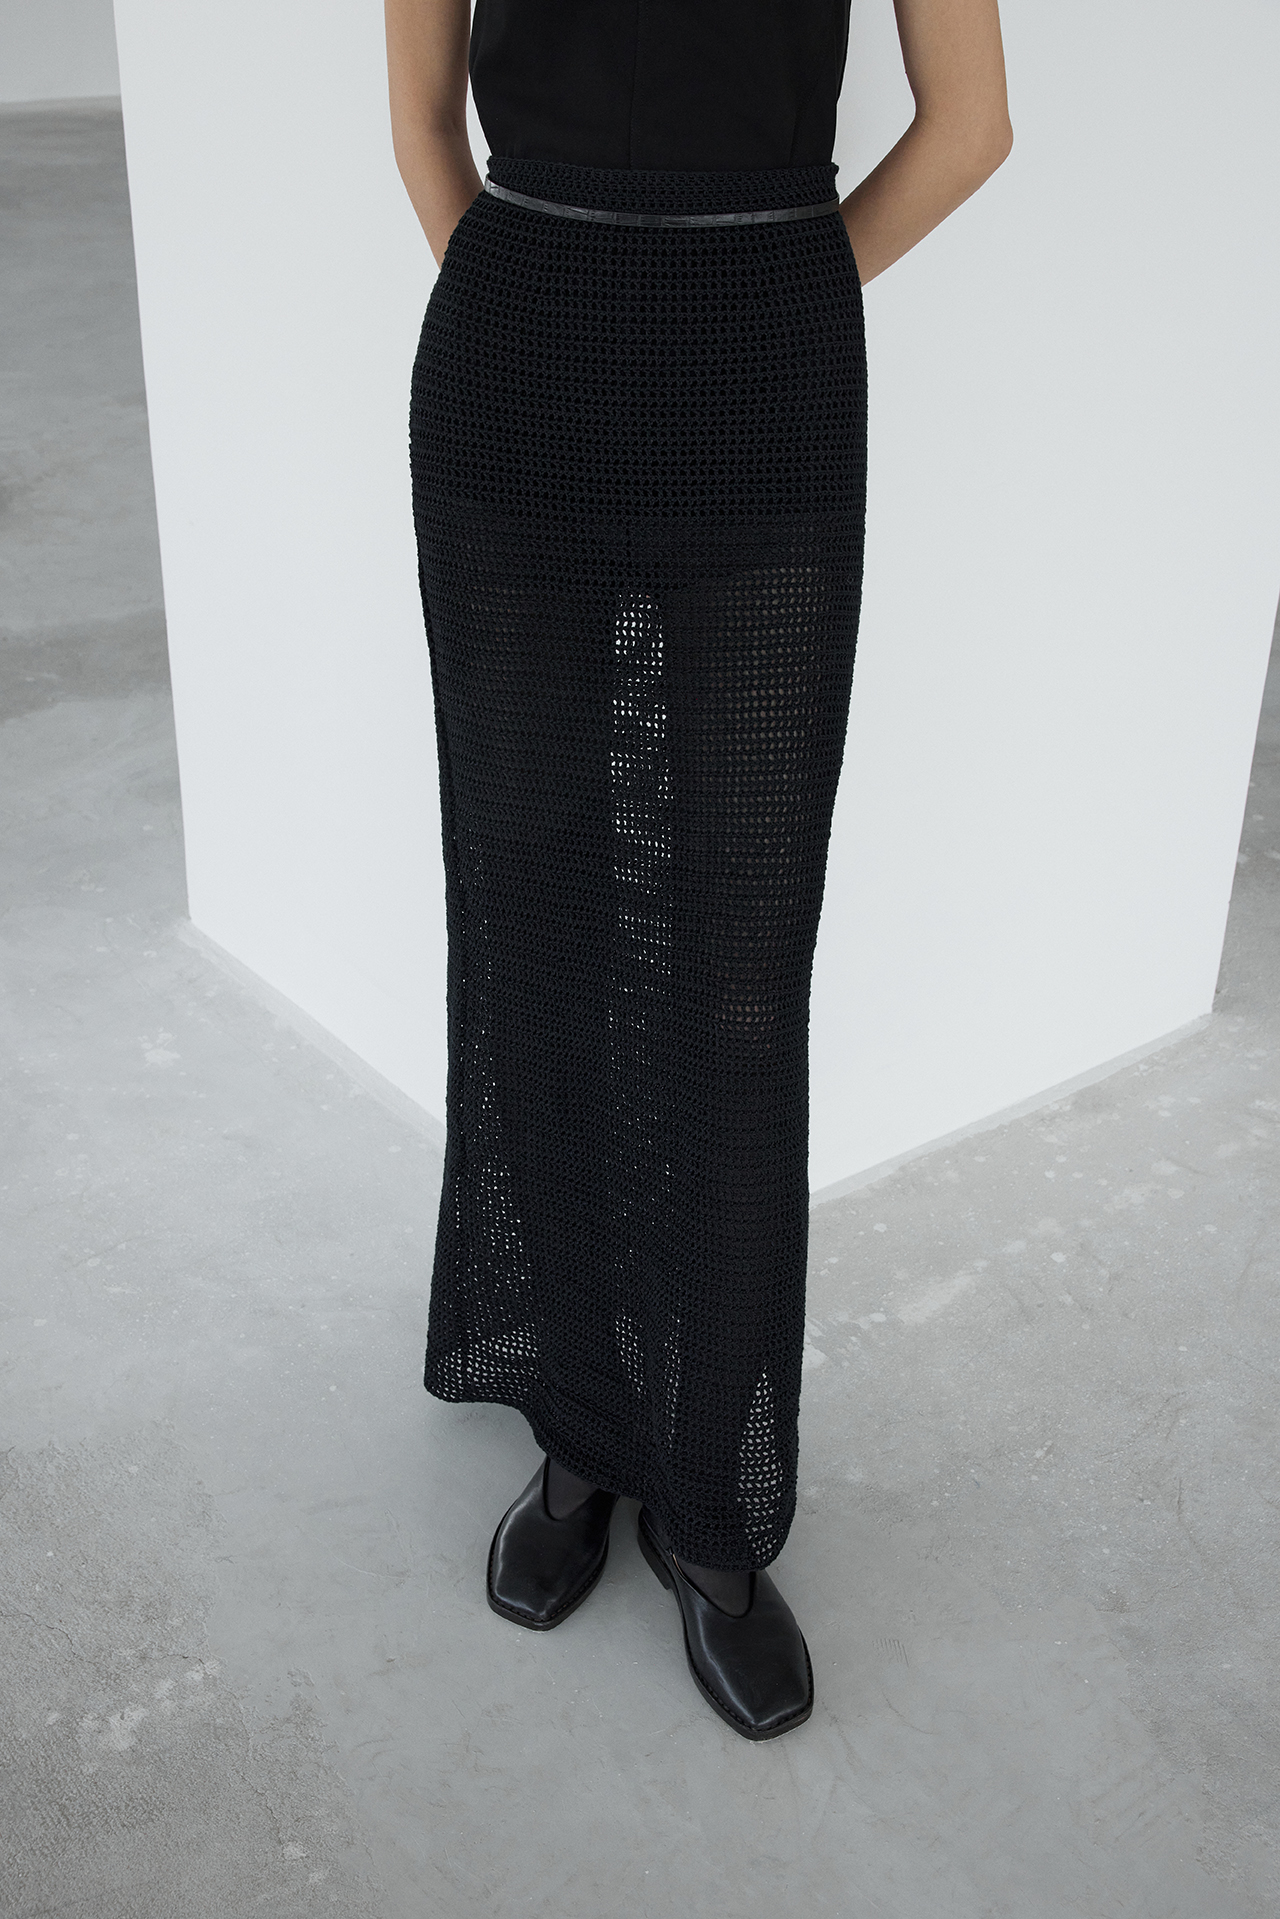 Dasha Crochet Skirt in Black